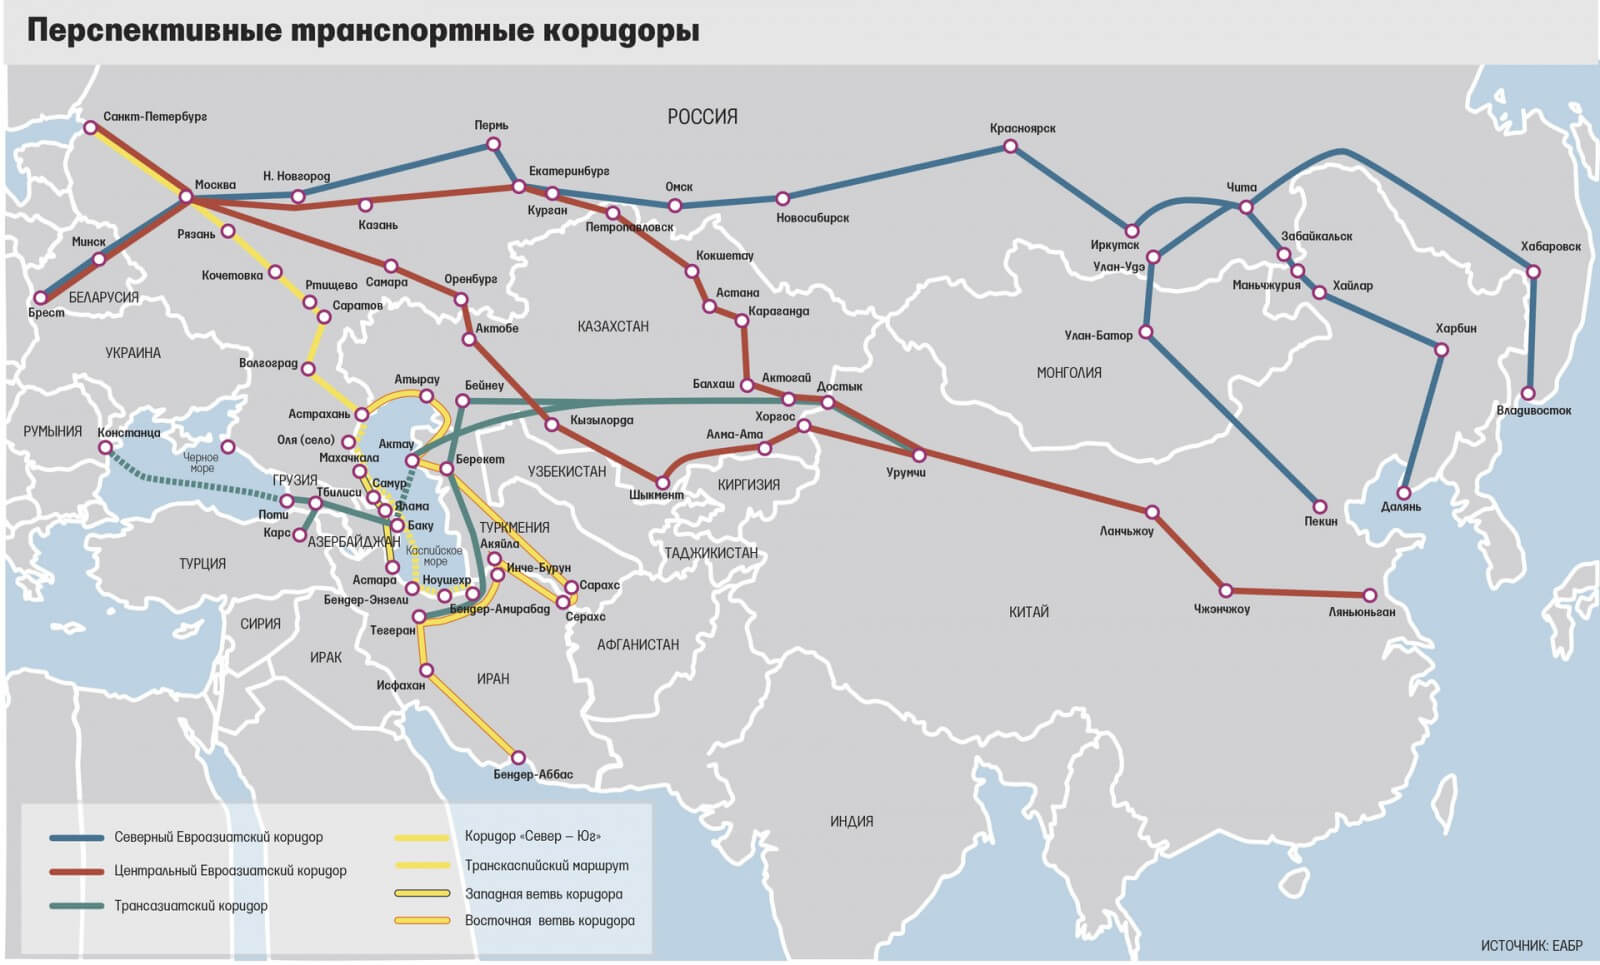 Схема международных транспортных коридоров на территории России